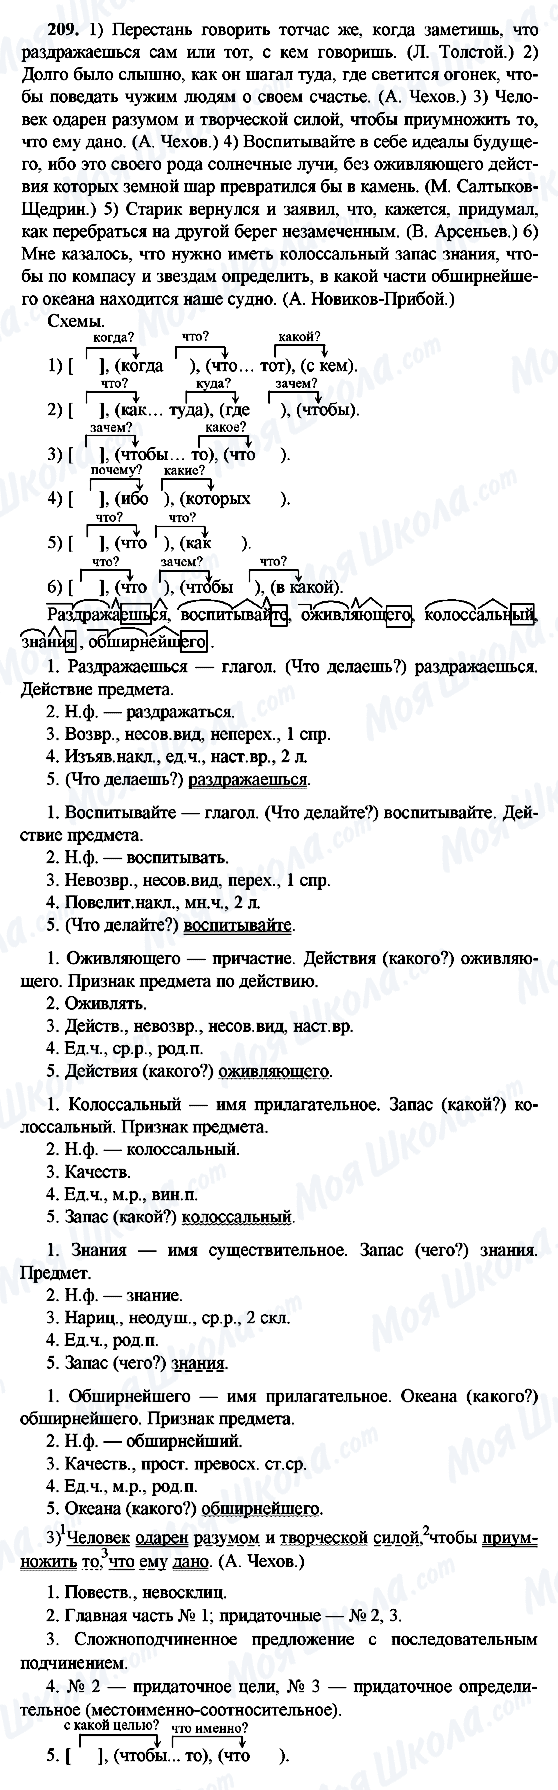 ГДЗ Російська мова 9 клас сторінка 209